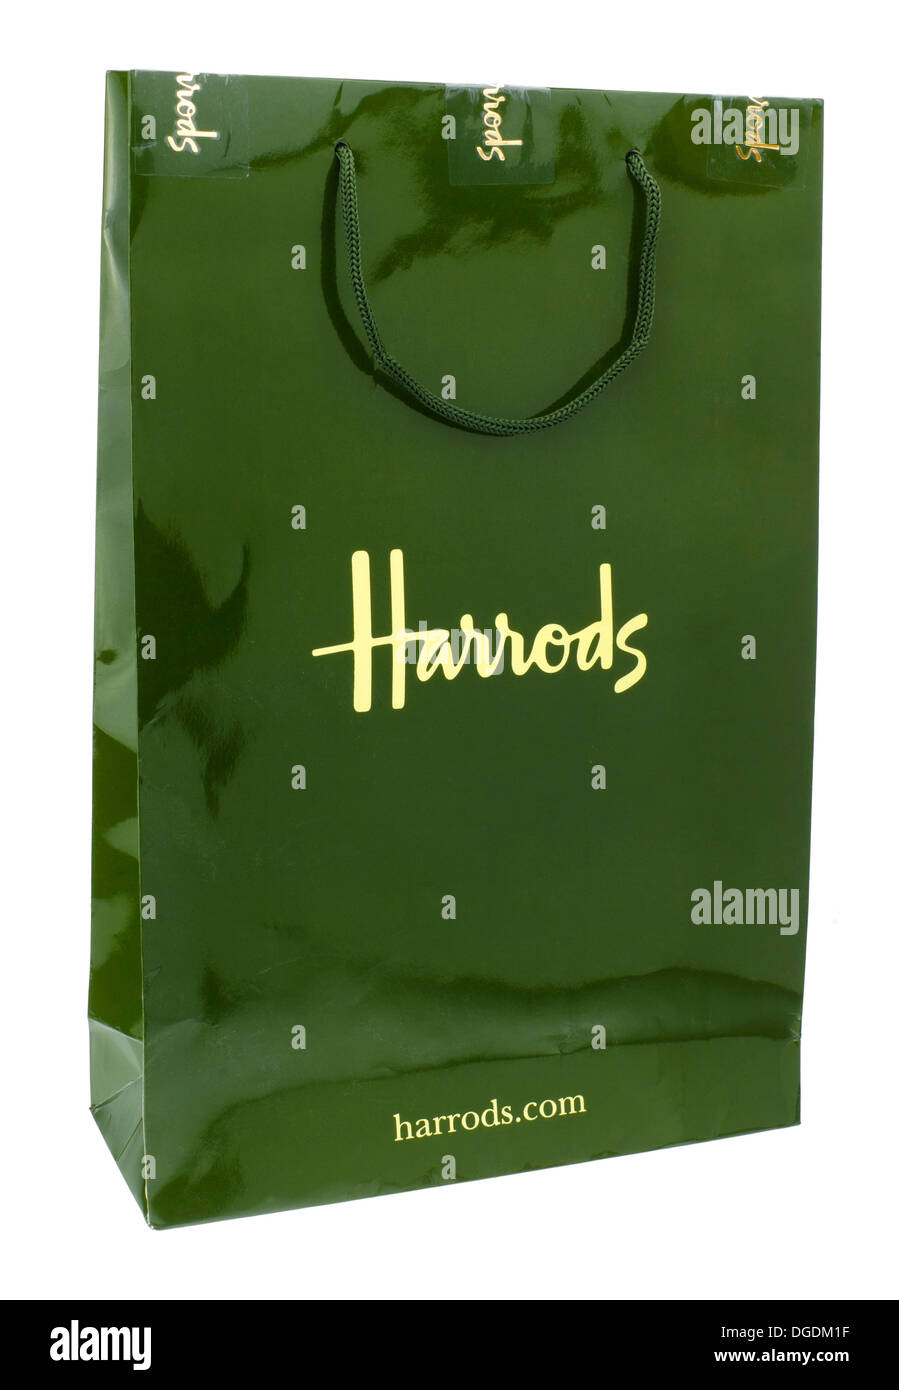 Harrods Carrier Bag, Harrods es una tienda de lujo en Knightsbridge, Londres, fundada en 1849 Foto de stock